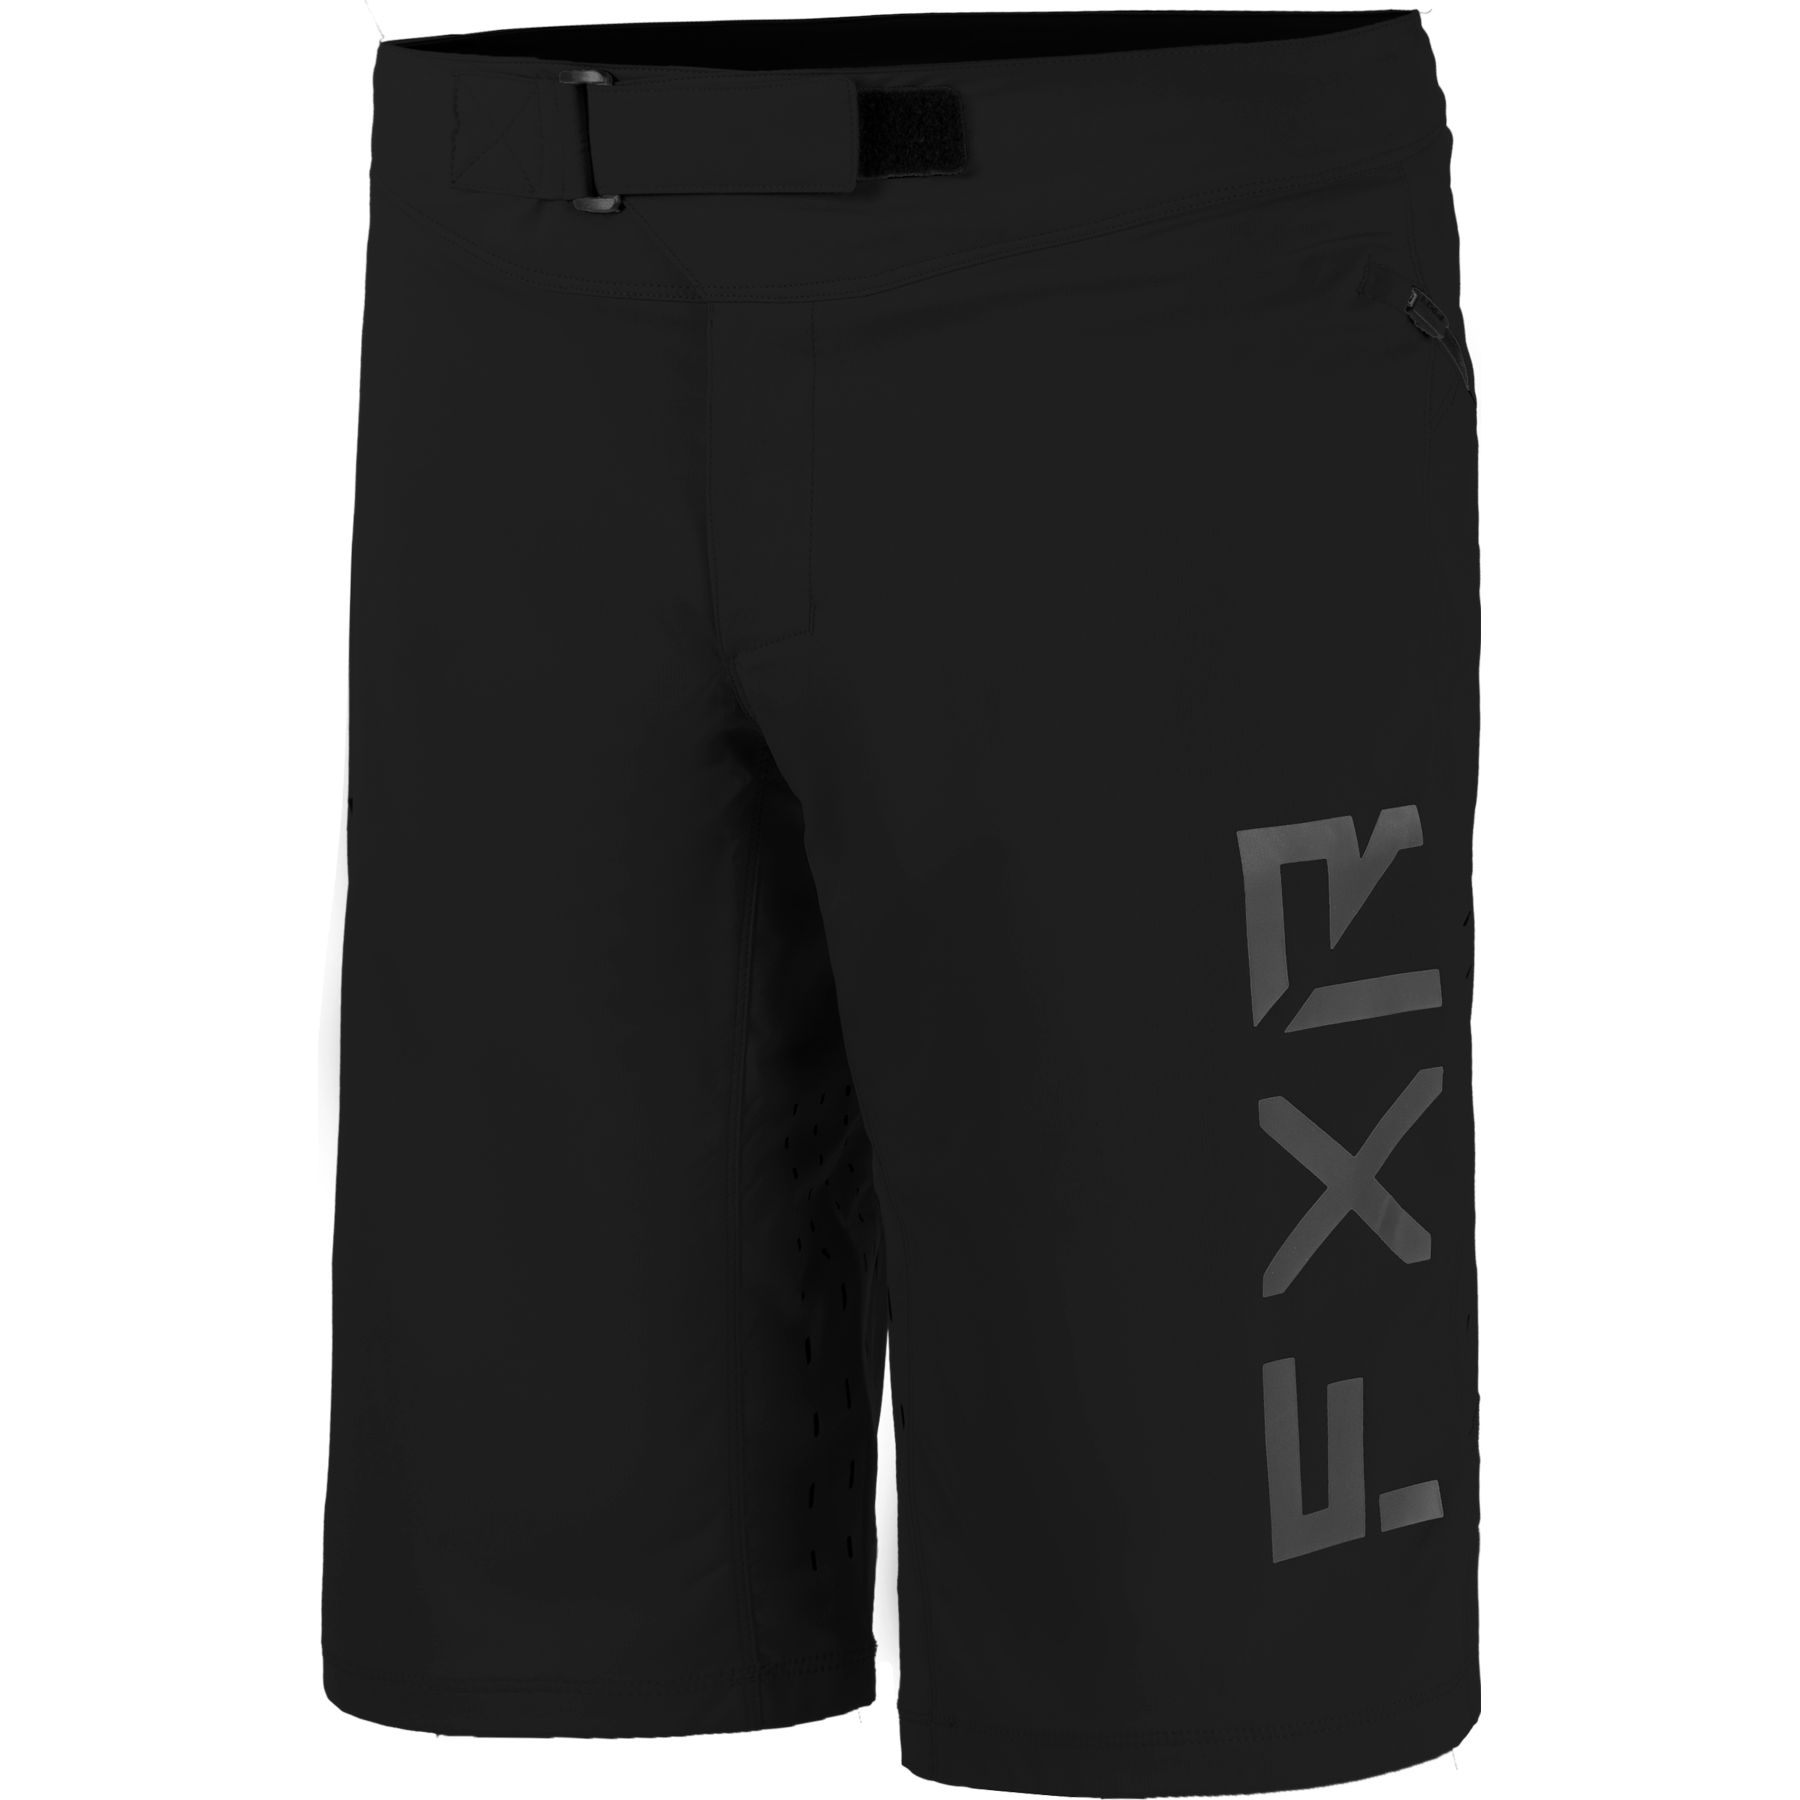 Shorts FXR Revo MTB, Black